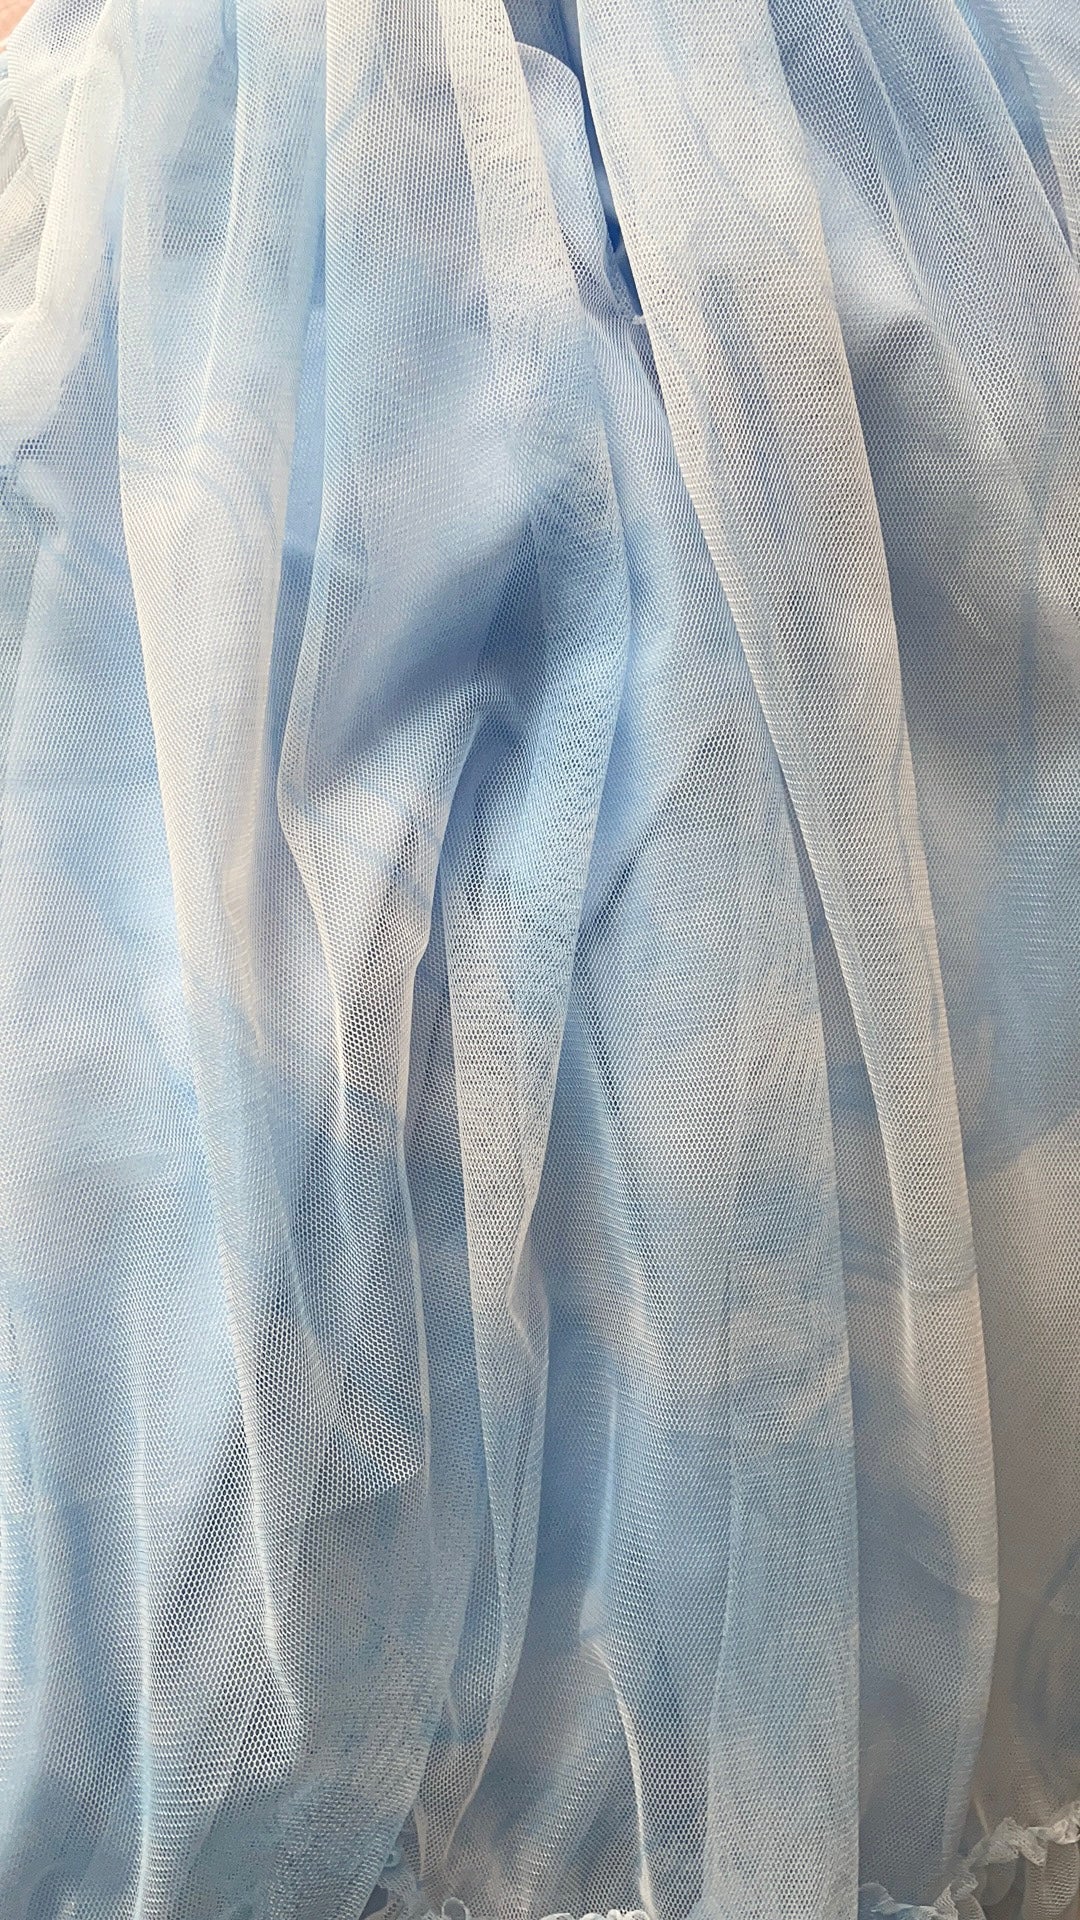 DOLLY® DREAMY BABYDOLL PUFF DRESS blue clouds ☁️